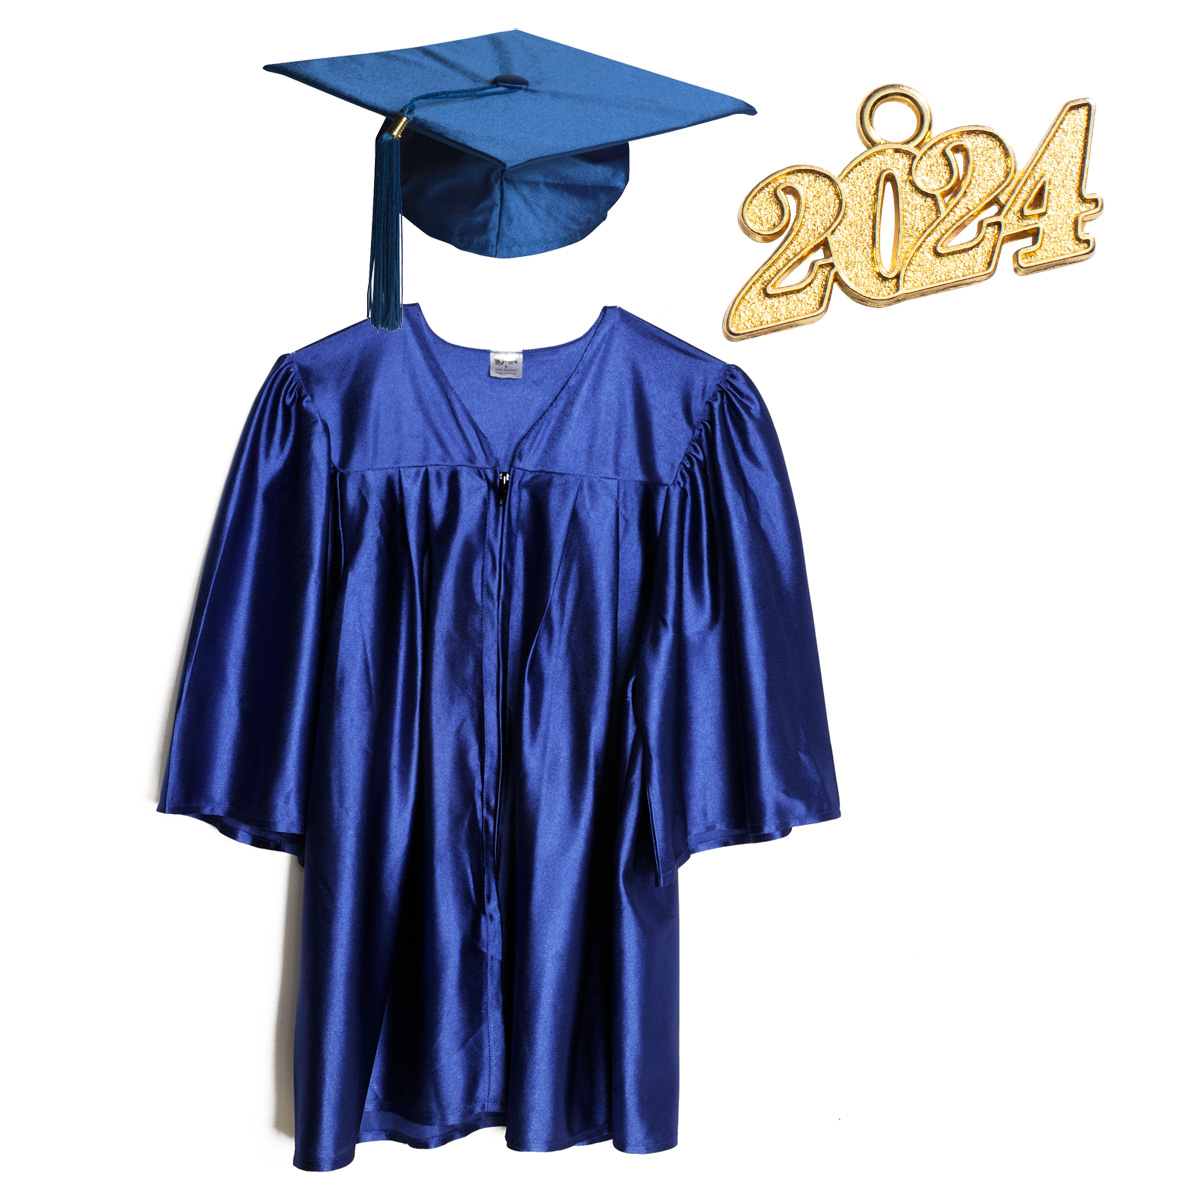 Graduation Cap Cutout Set of 3 Class of 2021 Mason Jar Tag Preschool Graduation 2021 Tags Grad Cap